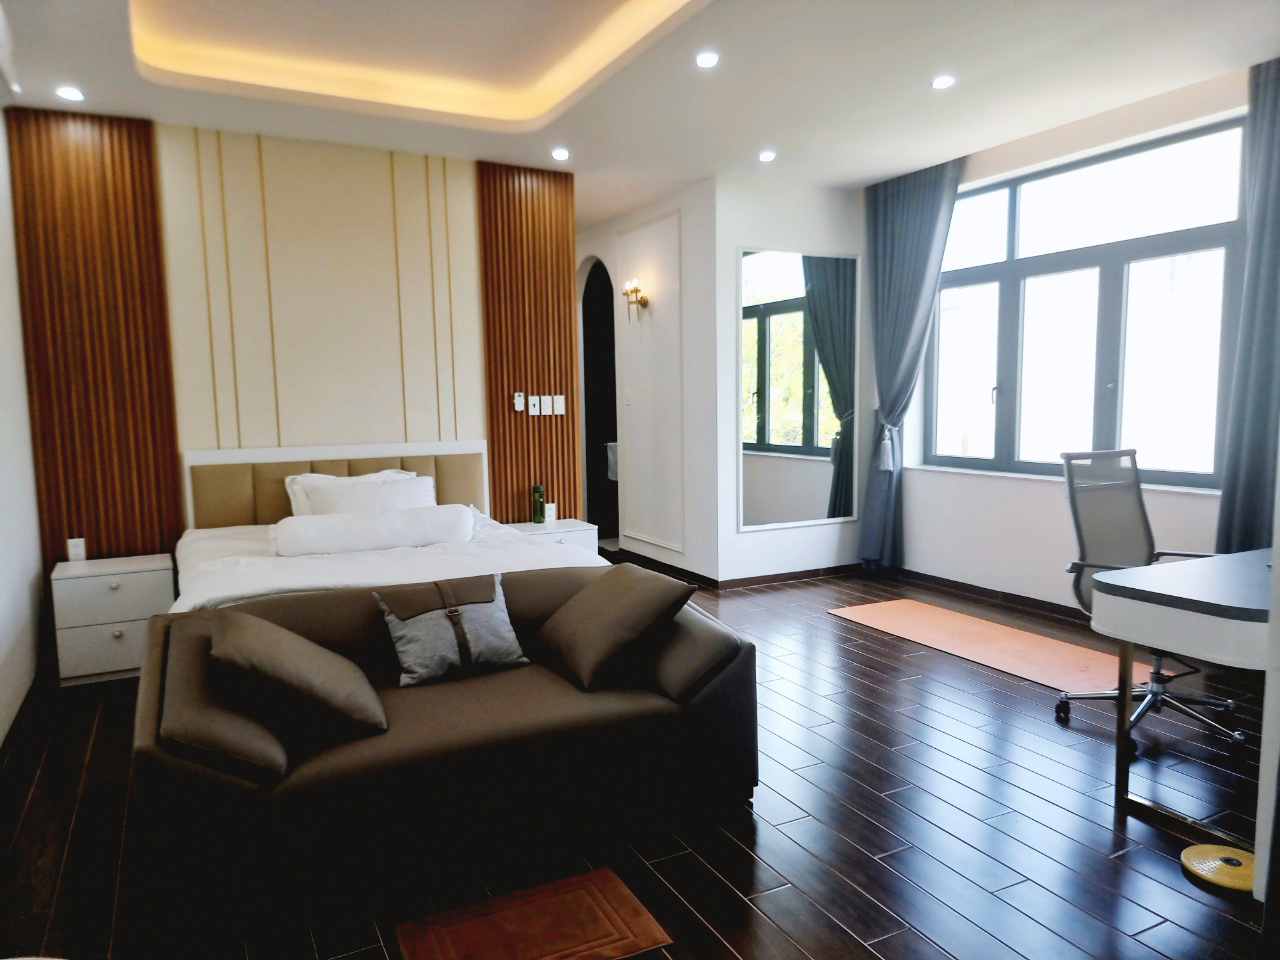 Hoàn thiện nội thất phòng ngủ master Nhà phố 150m2 Quận 2 phong cách Tân cổ điển Neo Classic